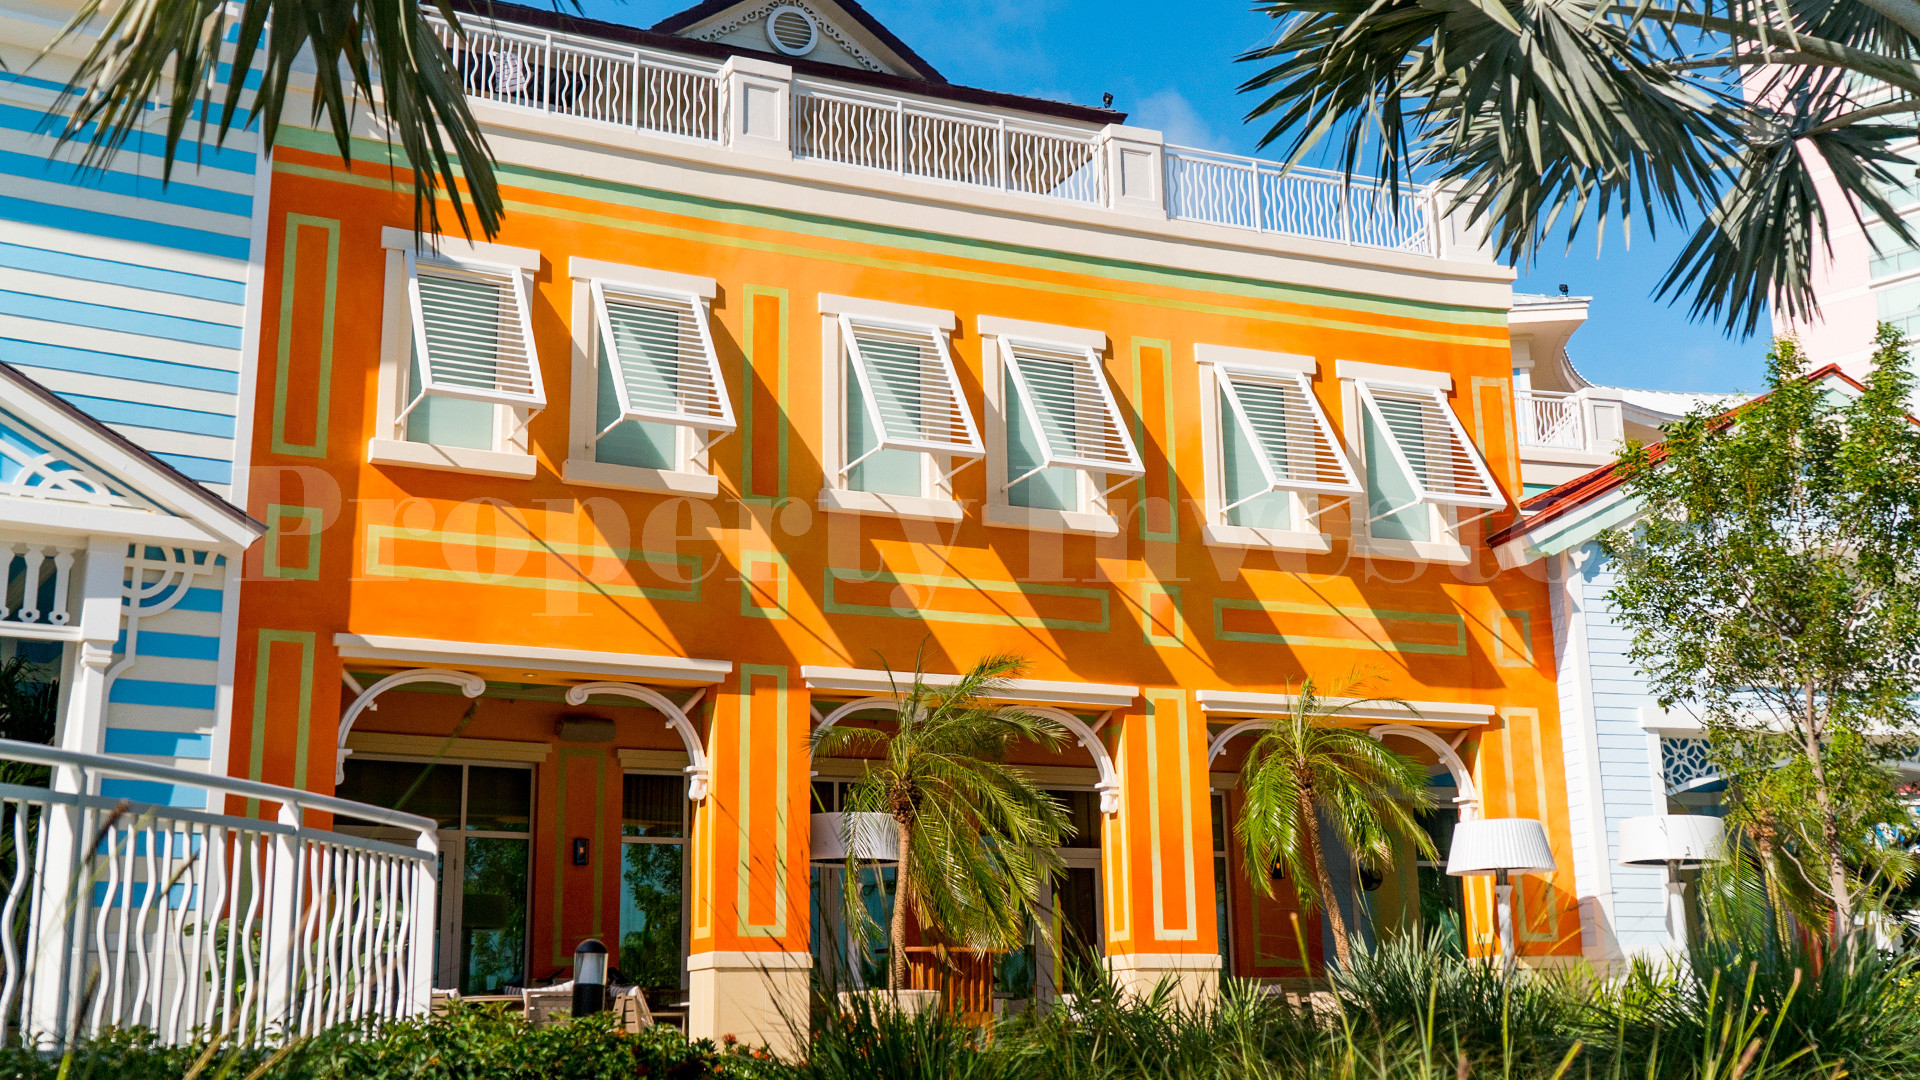 2 Bedroom Condo-Hotel Suite in the Bahamas (Suite 403)